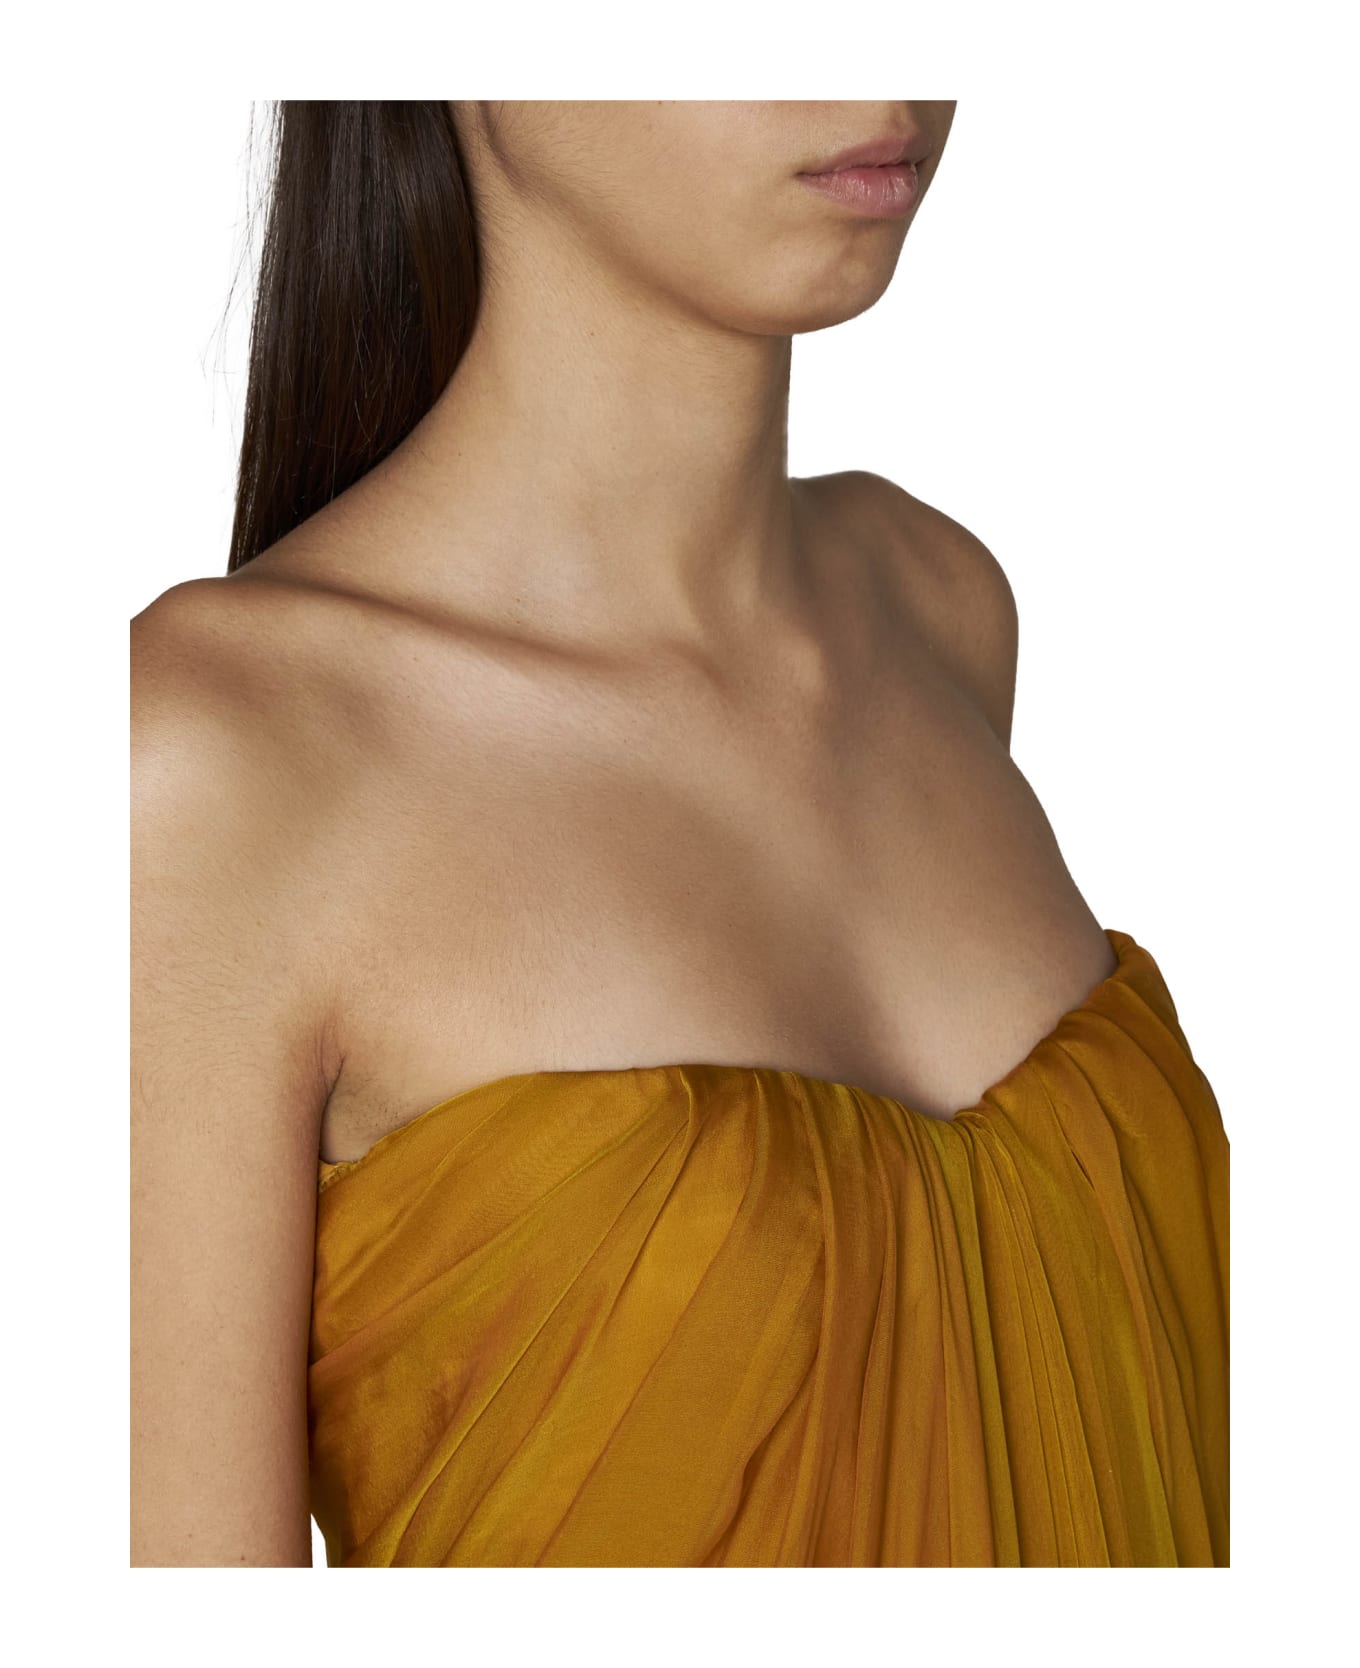 Alexander McQueen Dress - Saffron